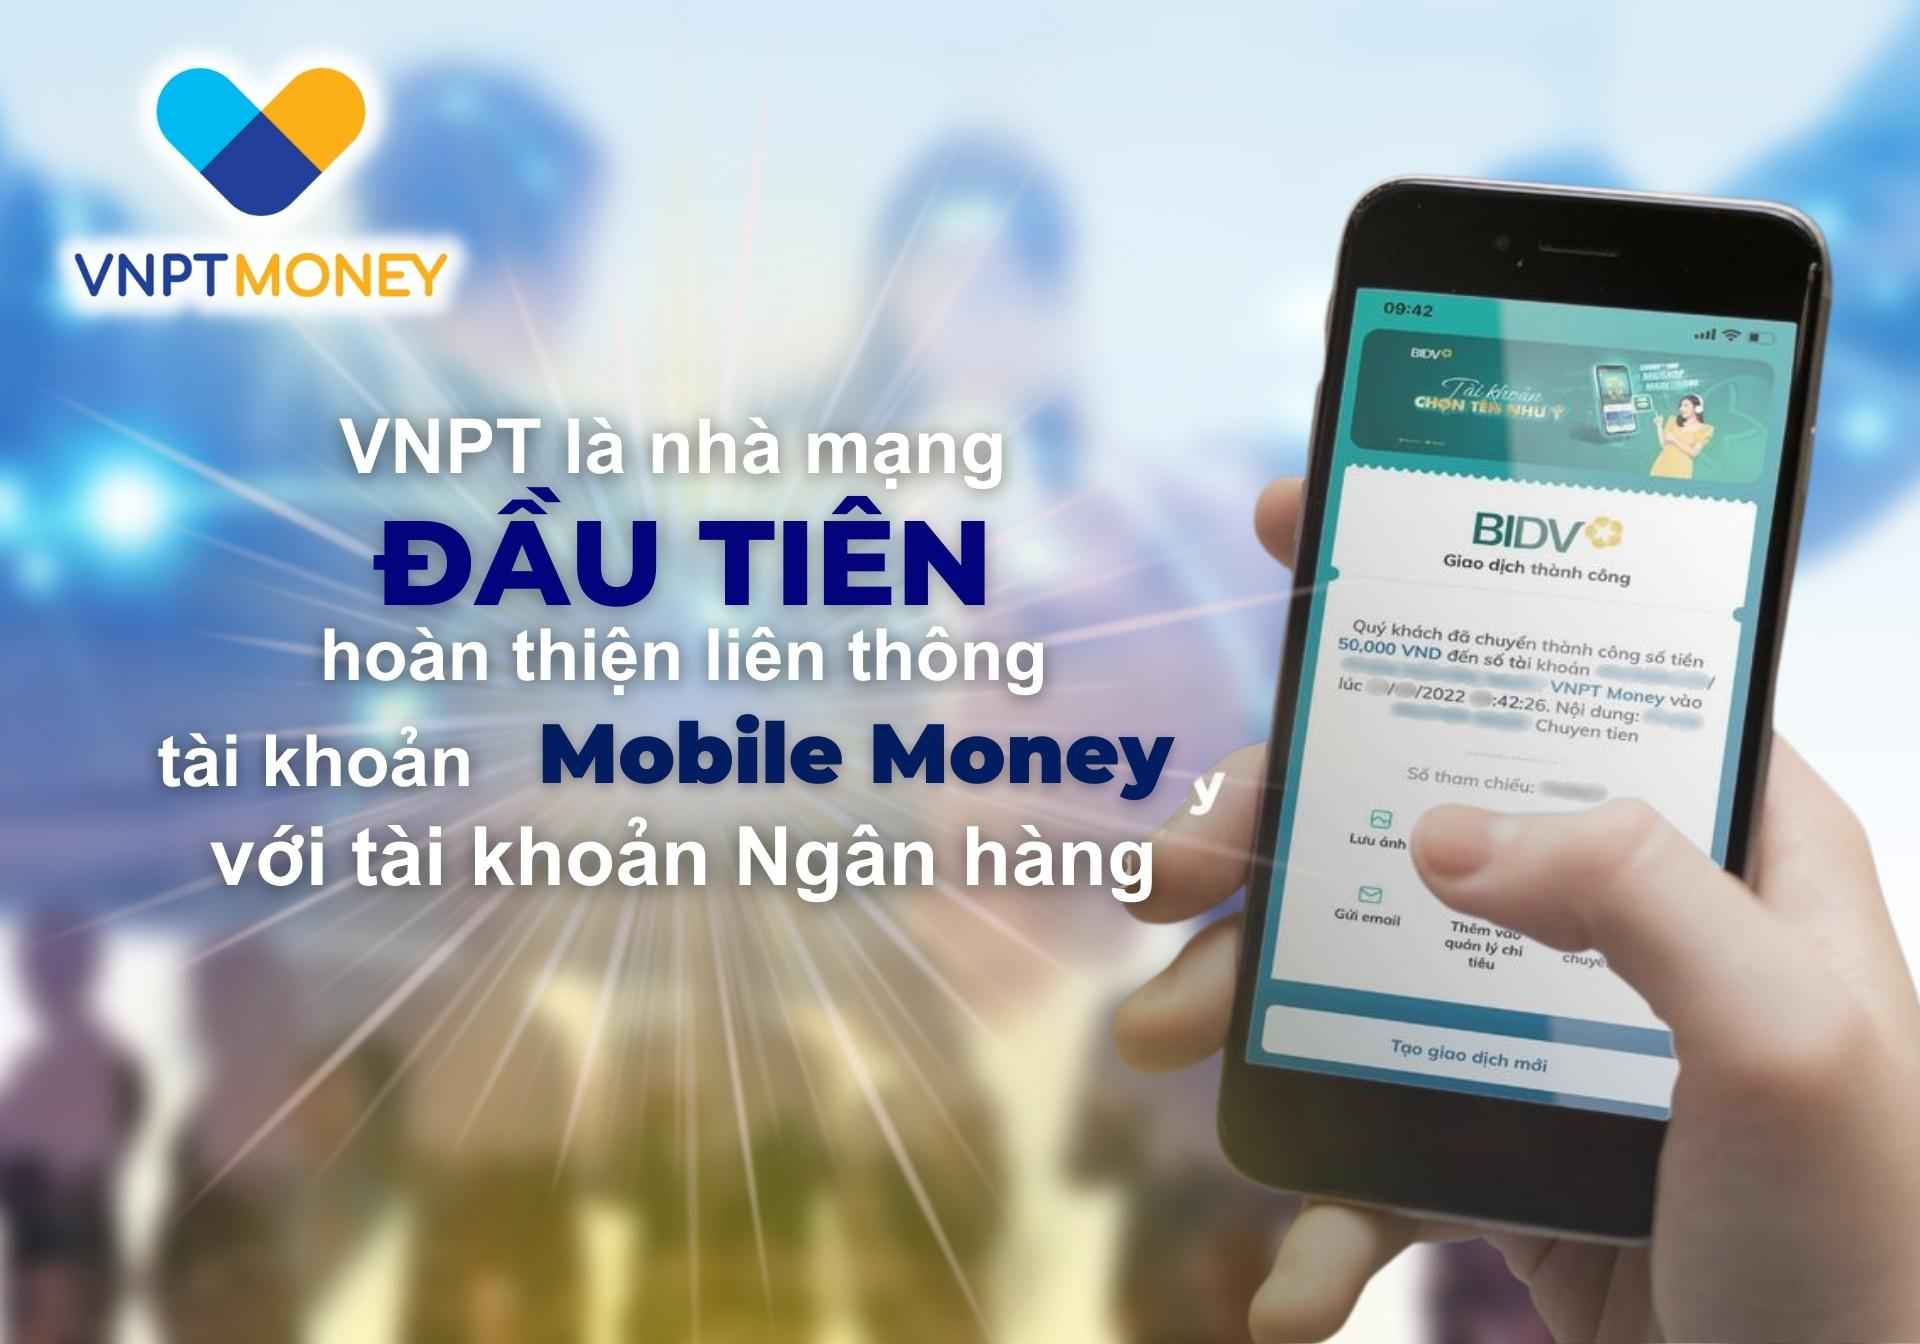 VNPT là nhà mạng đầu tiên hoàn thiện liên thông tài khoản Mobile Money với tài khoản ngân hàng